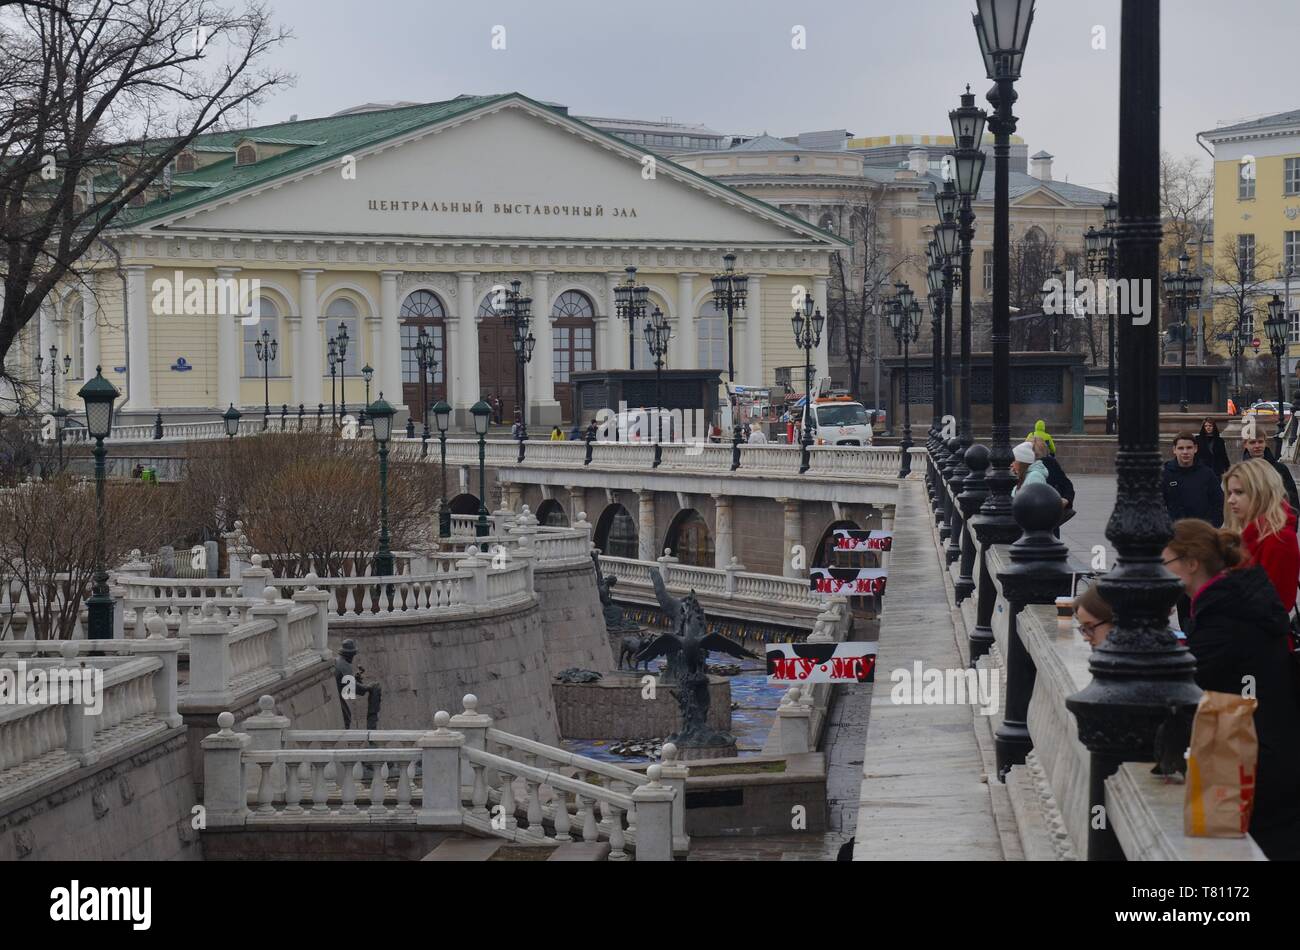 Moskau, Hauptstadt der russischen Föderation: Parco an der Ausstellungshalle Foto Stock